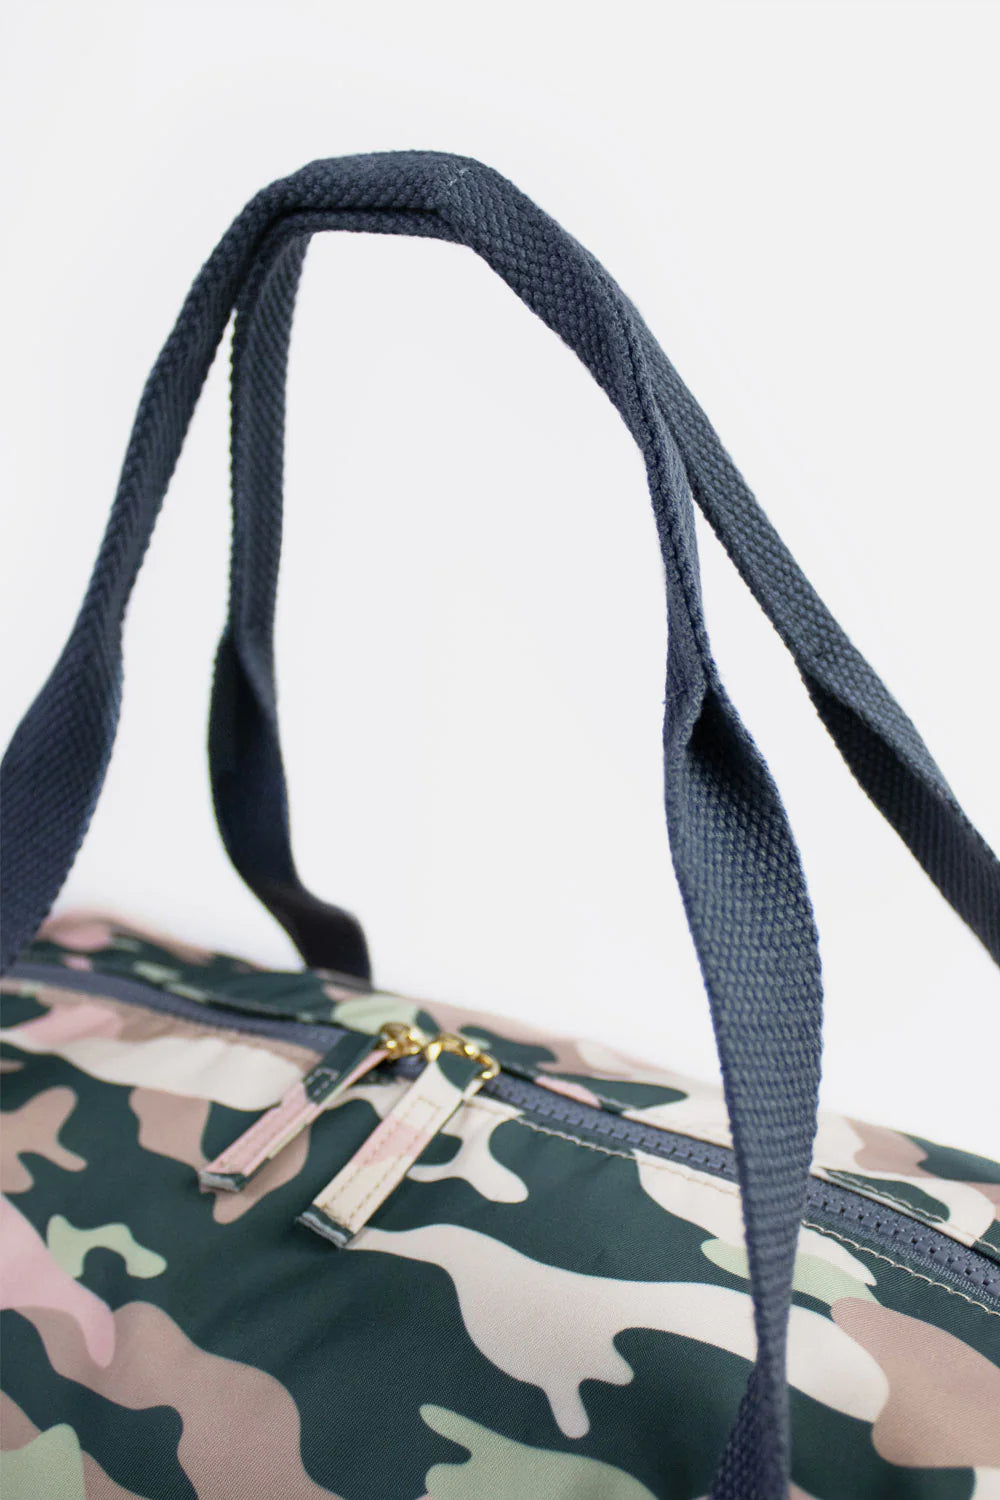 Weekender Bag - Camouflage